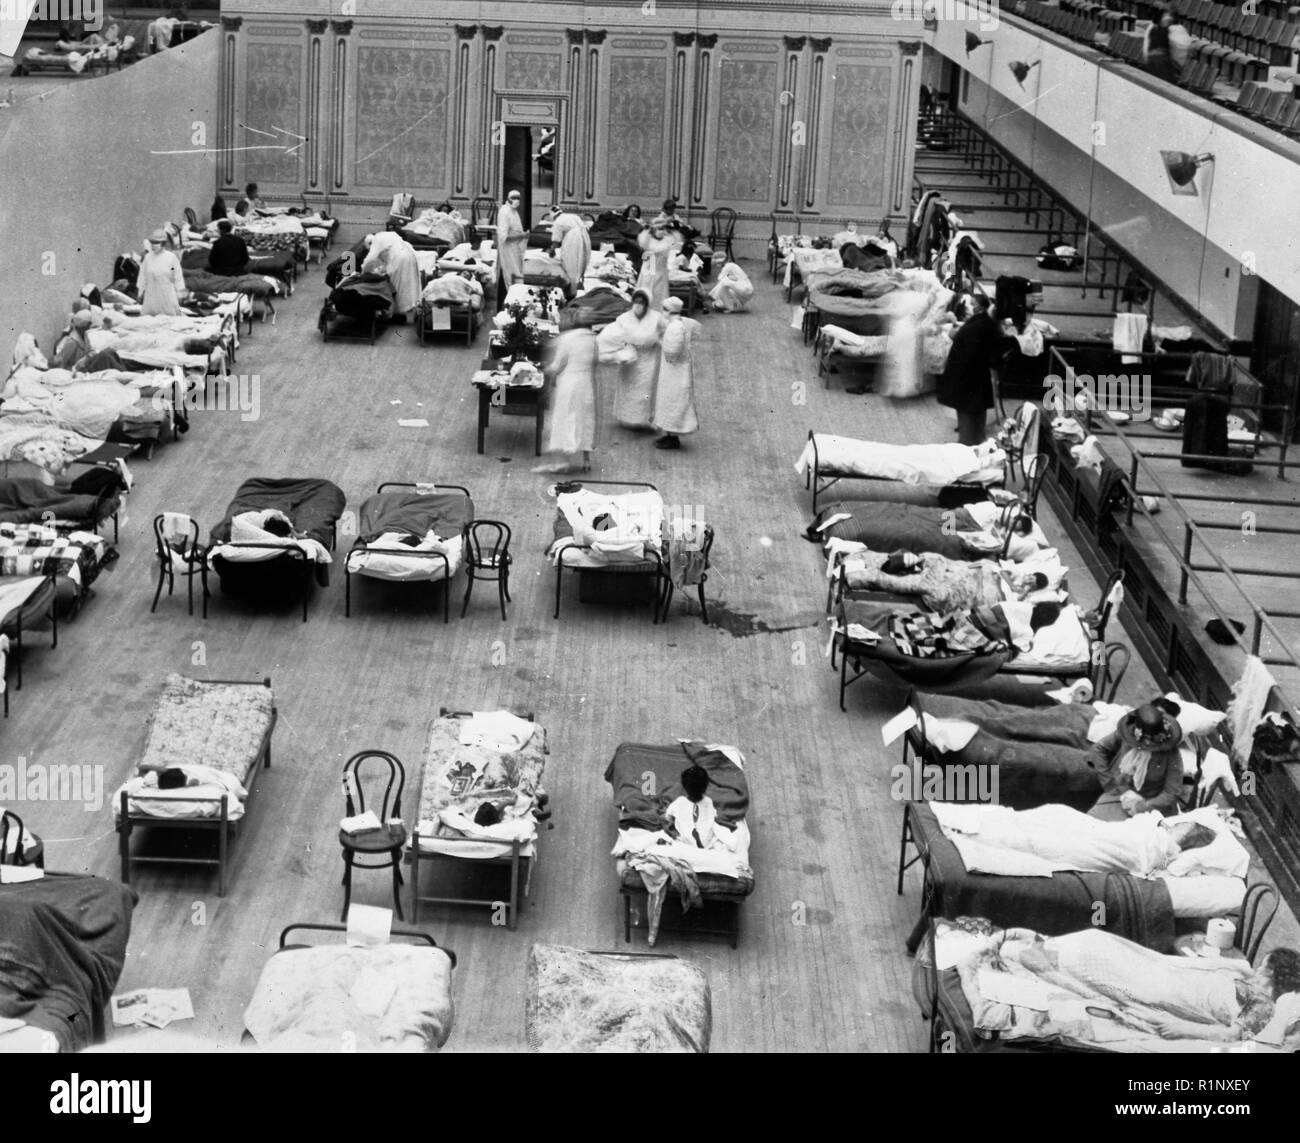 1918 epidemia di influenza: Oakland Auditorium comunale in uso come un ospedale temporaneo. La fotografia illustra infermieri volontari dalla Croce Rossa Americana tendendo i malati di influenza nell'Oakland Auditorium di Oakland, California, durante la pandemia influenzale del 1918. Foto Stock